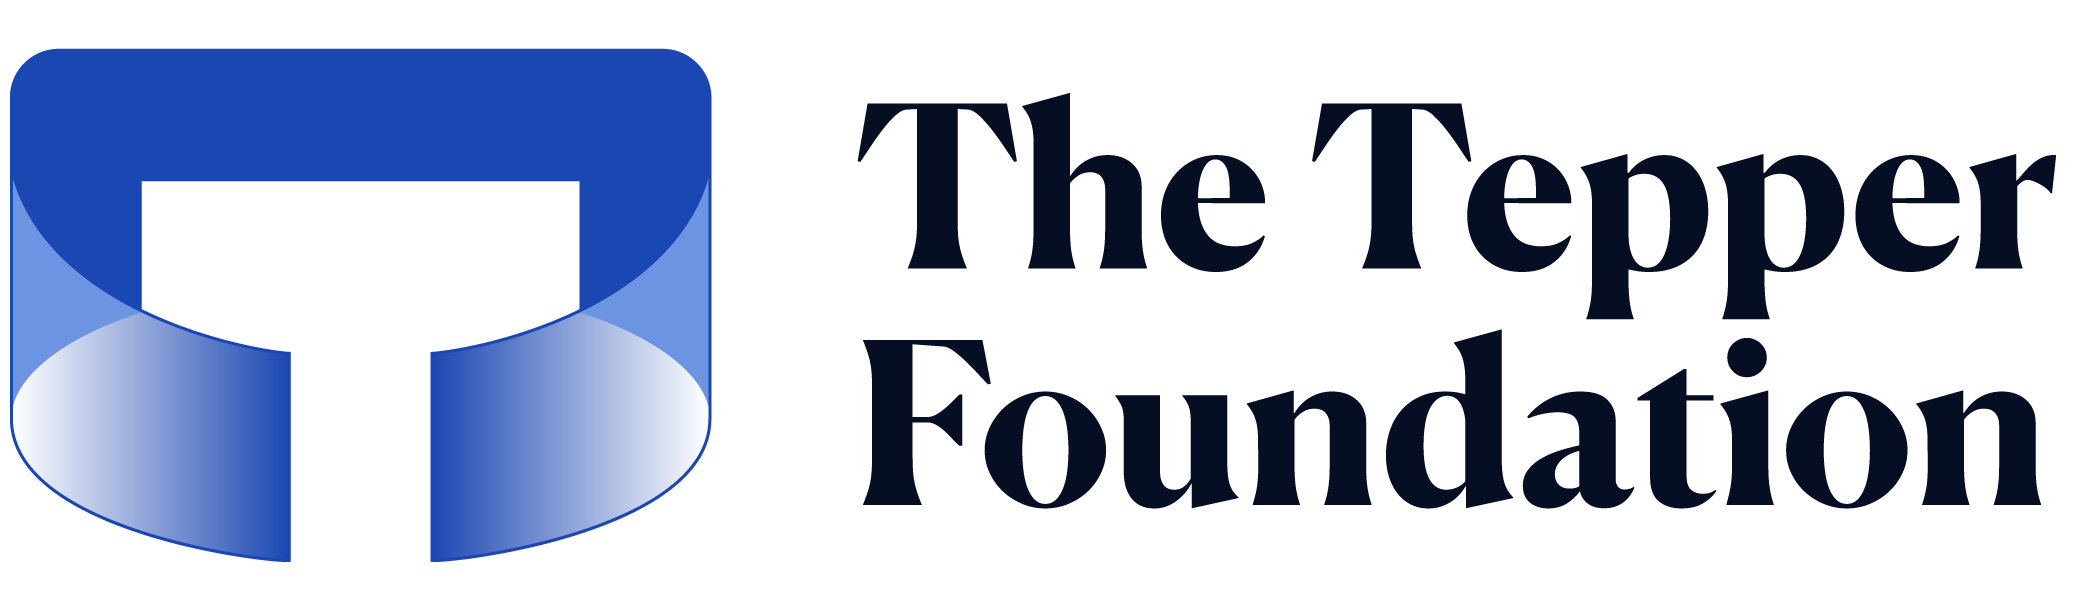 The Tepper Foundation logo